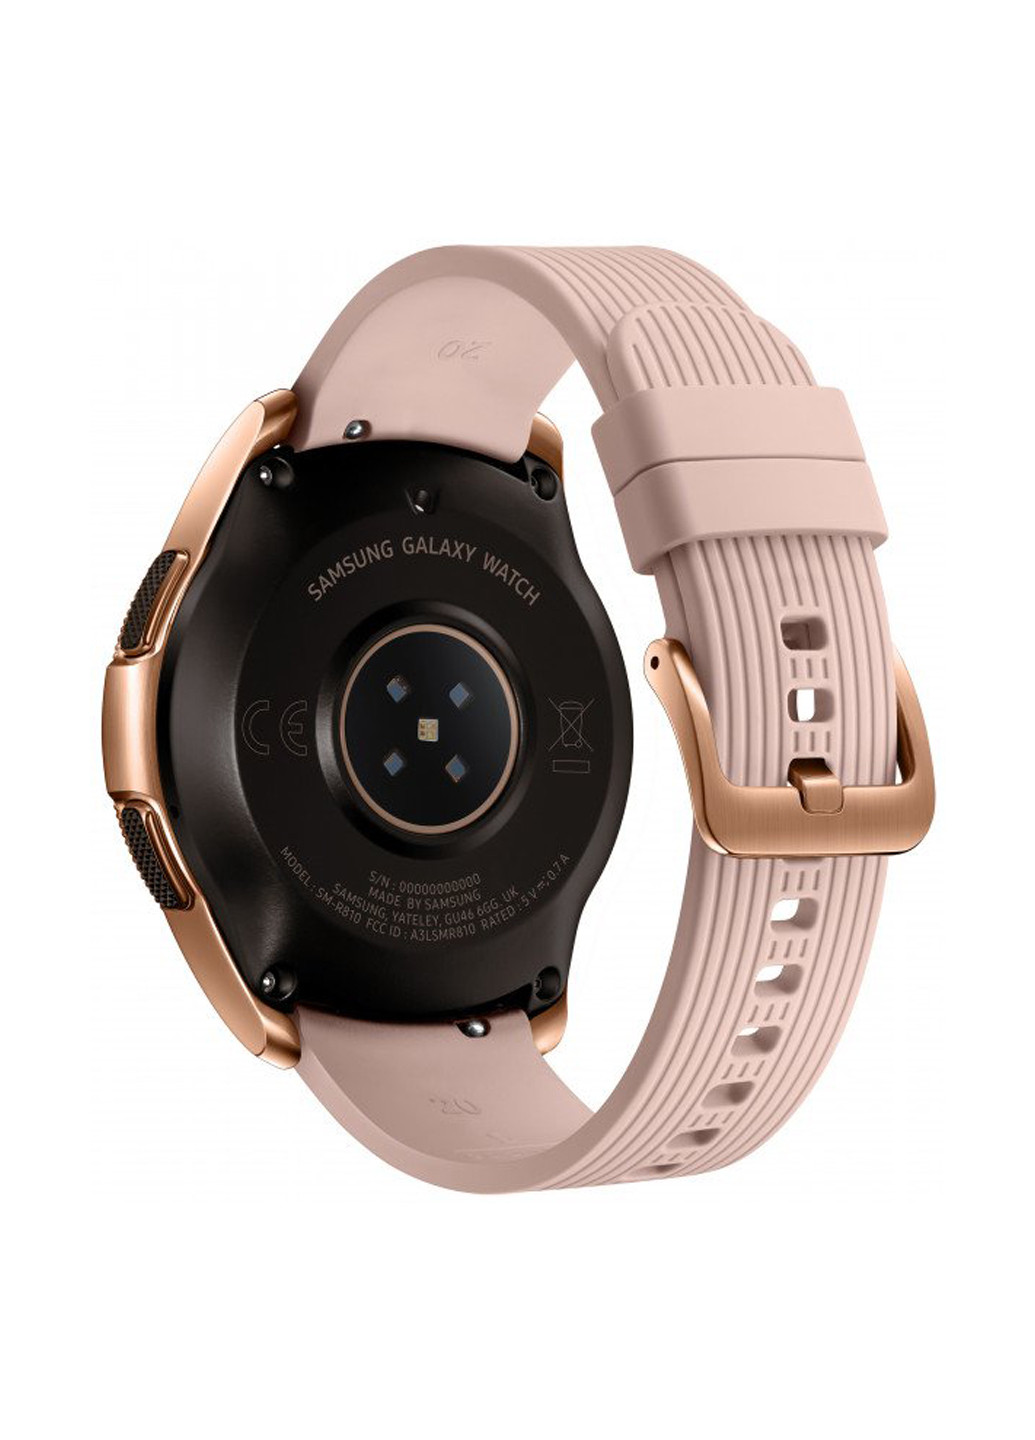 Смарт-часы Galaxy Watch 42mm (SM-R810) GOLD Samsung samsung galaxy watch 42mm (sm-r810) gold (130592104)